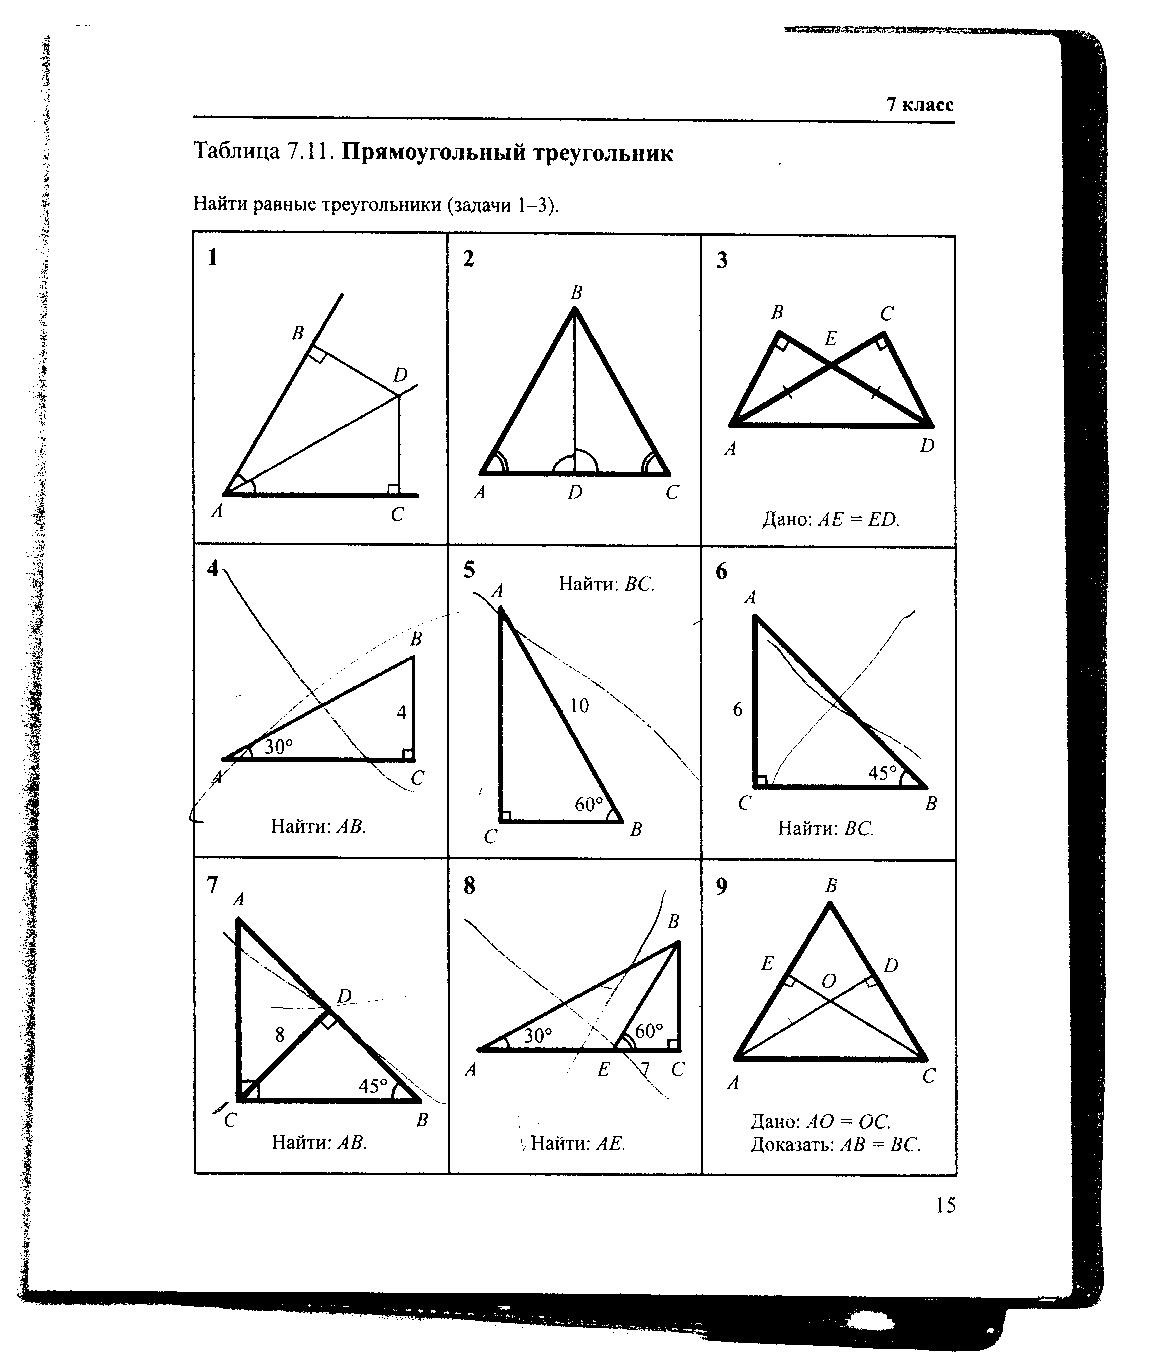 Задачи на чертежах 7 9 классы. Геометрия Рабинович 7-9 класс задачи на готовых чертежах. Гдз по геометрии Рабинович 7-9 класс задачи на готовых чертежах. Гдз Рабинович 7-9 класс геометрия ответы. Таблица 7.11 прямоугольный треугольник 7 класс.